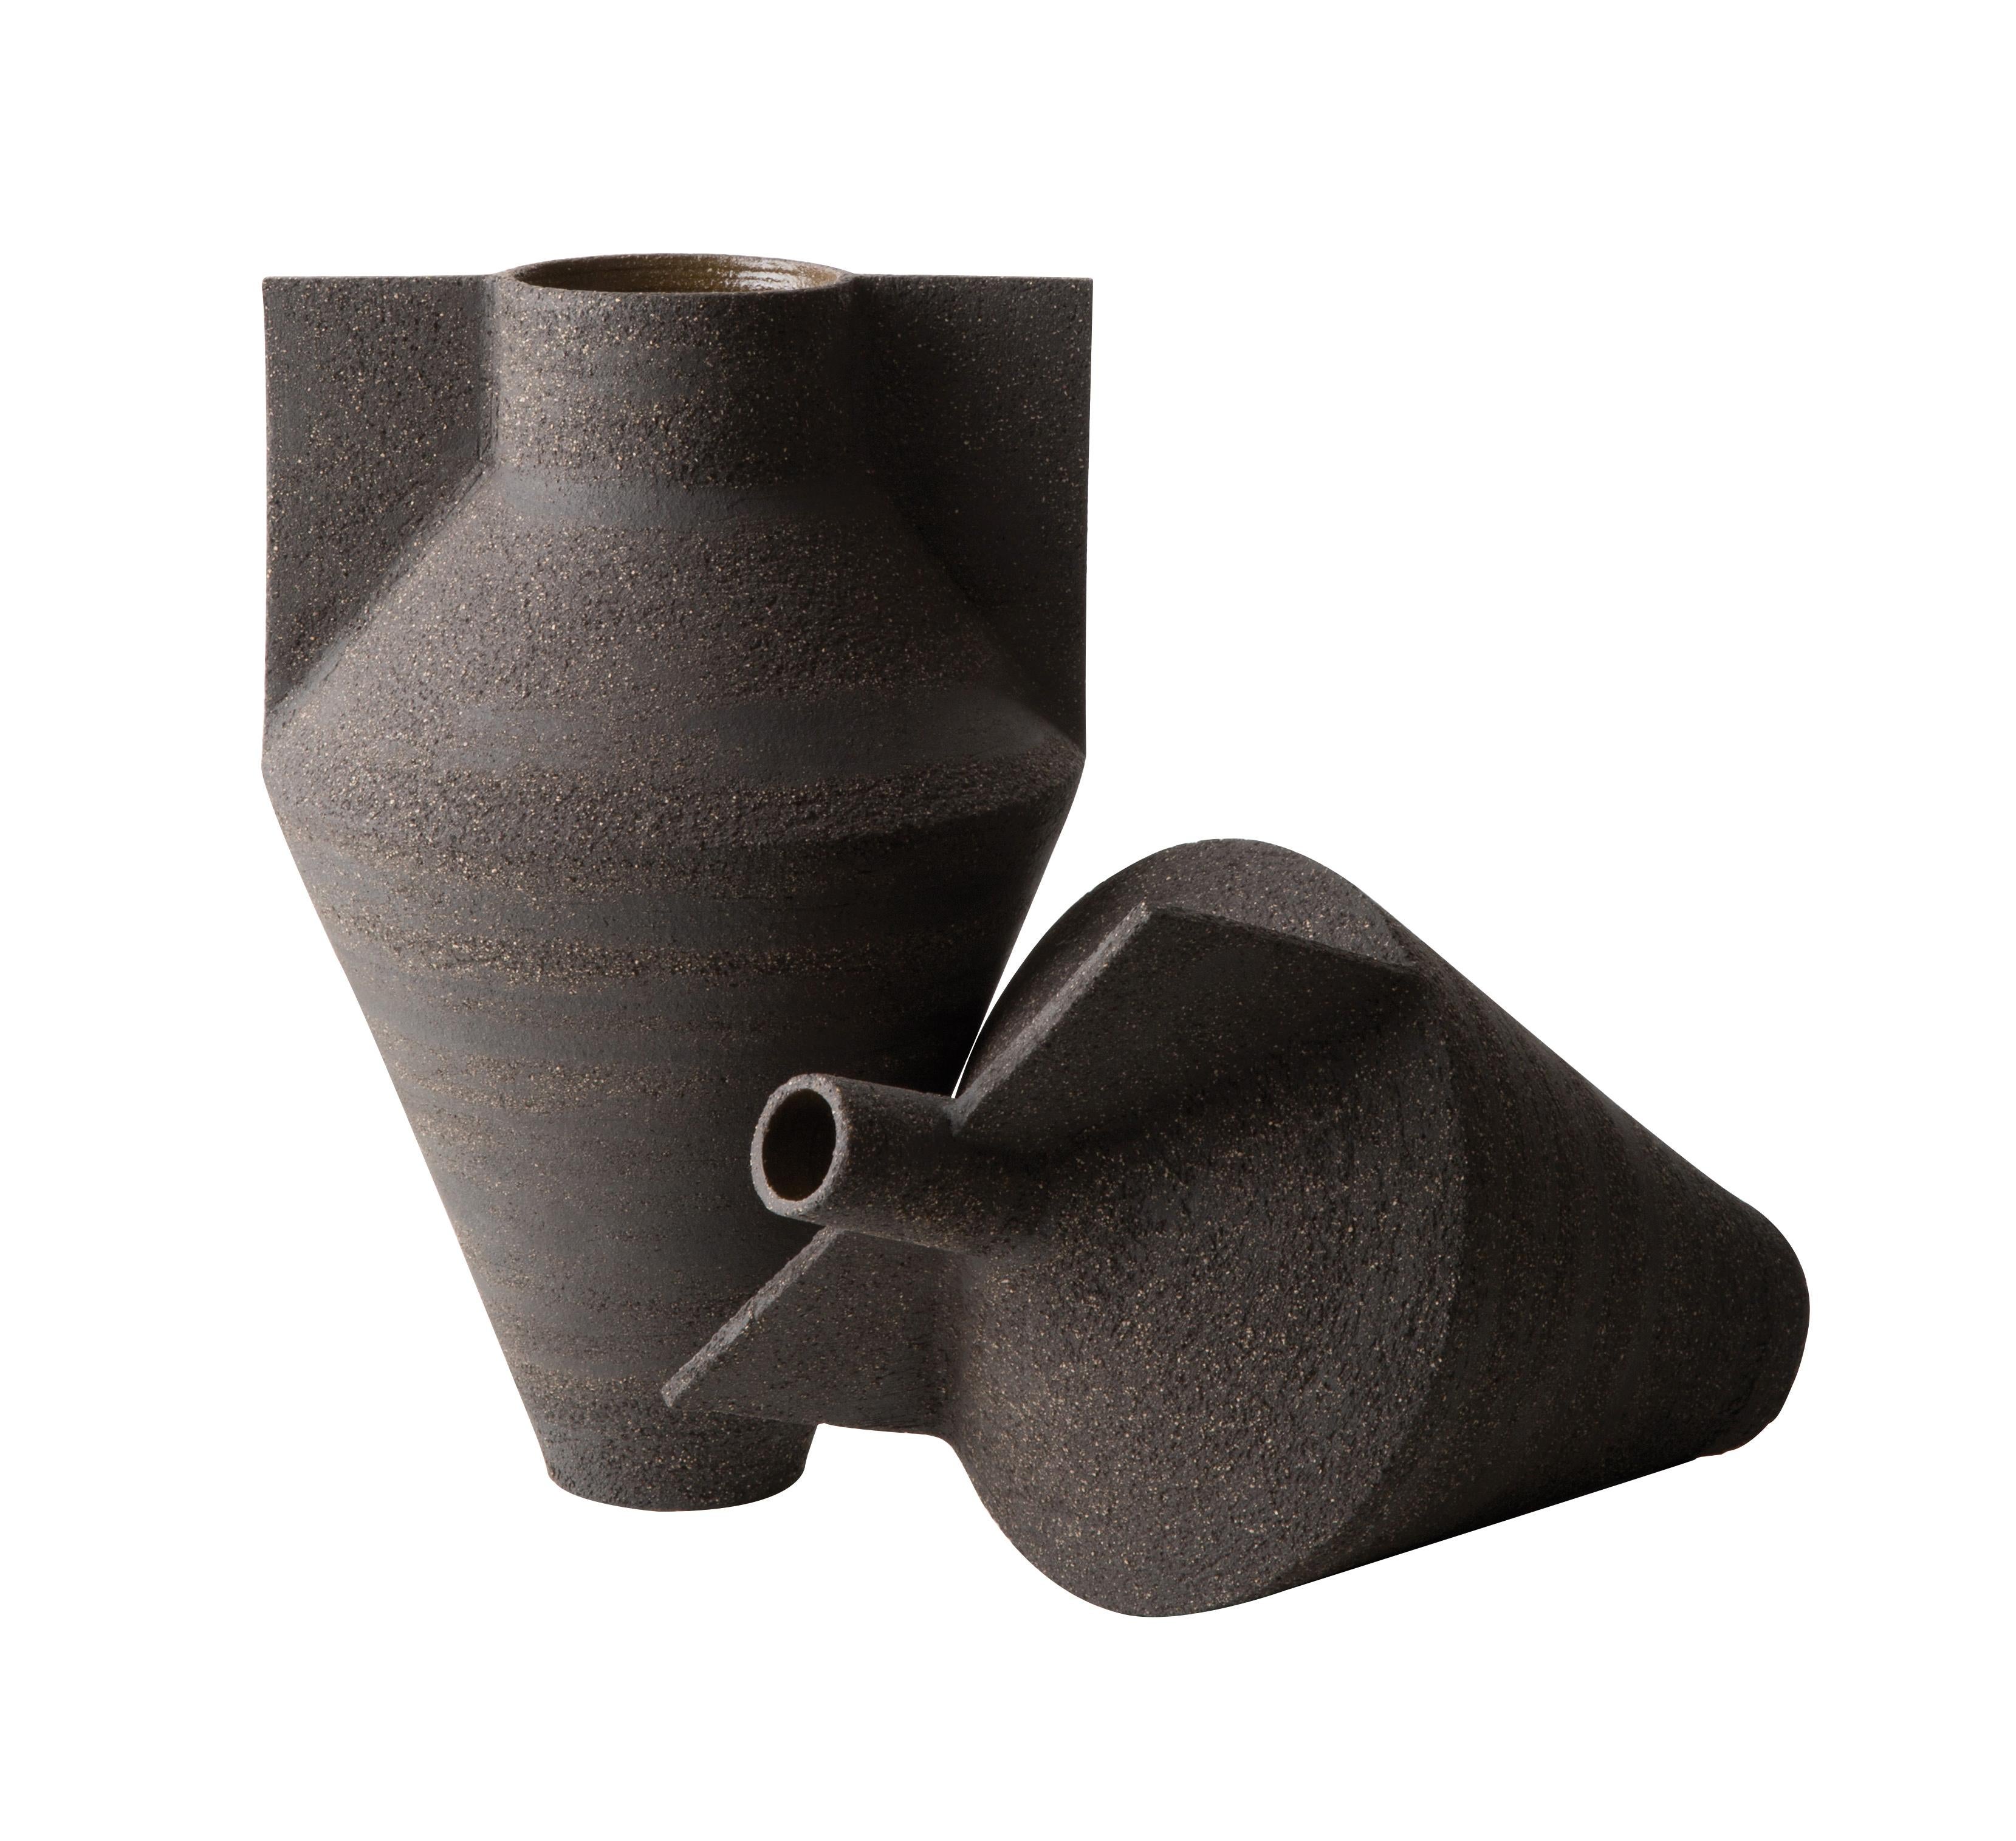 Die Jana-Vasen sind eine von Antonio's für Cappellini entworfene Kollektion, die sich durch klare Linien und Handarbeit auszeichnet. Diese Vasen werden aus schwarzer Erde hergestellt, von Hand auf einer Töpferscheibe geschmiedet und sind in zwei